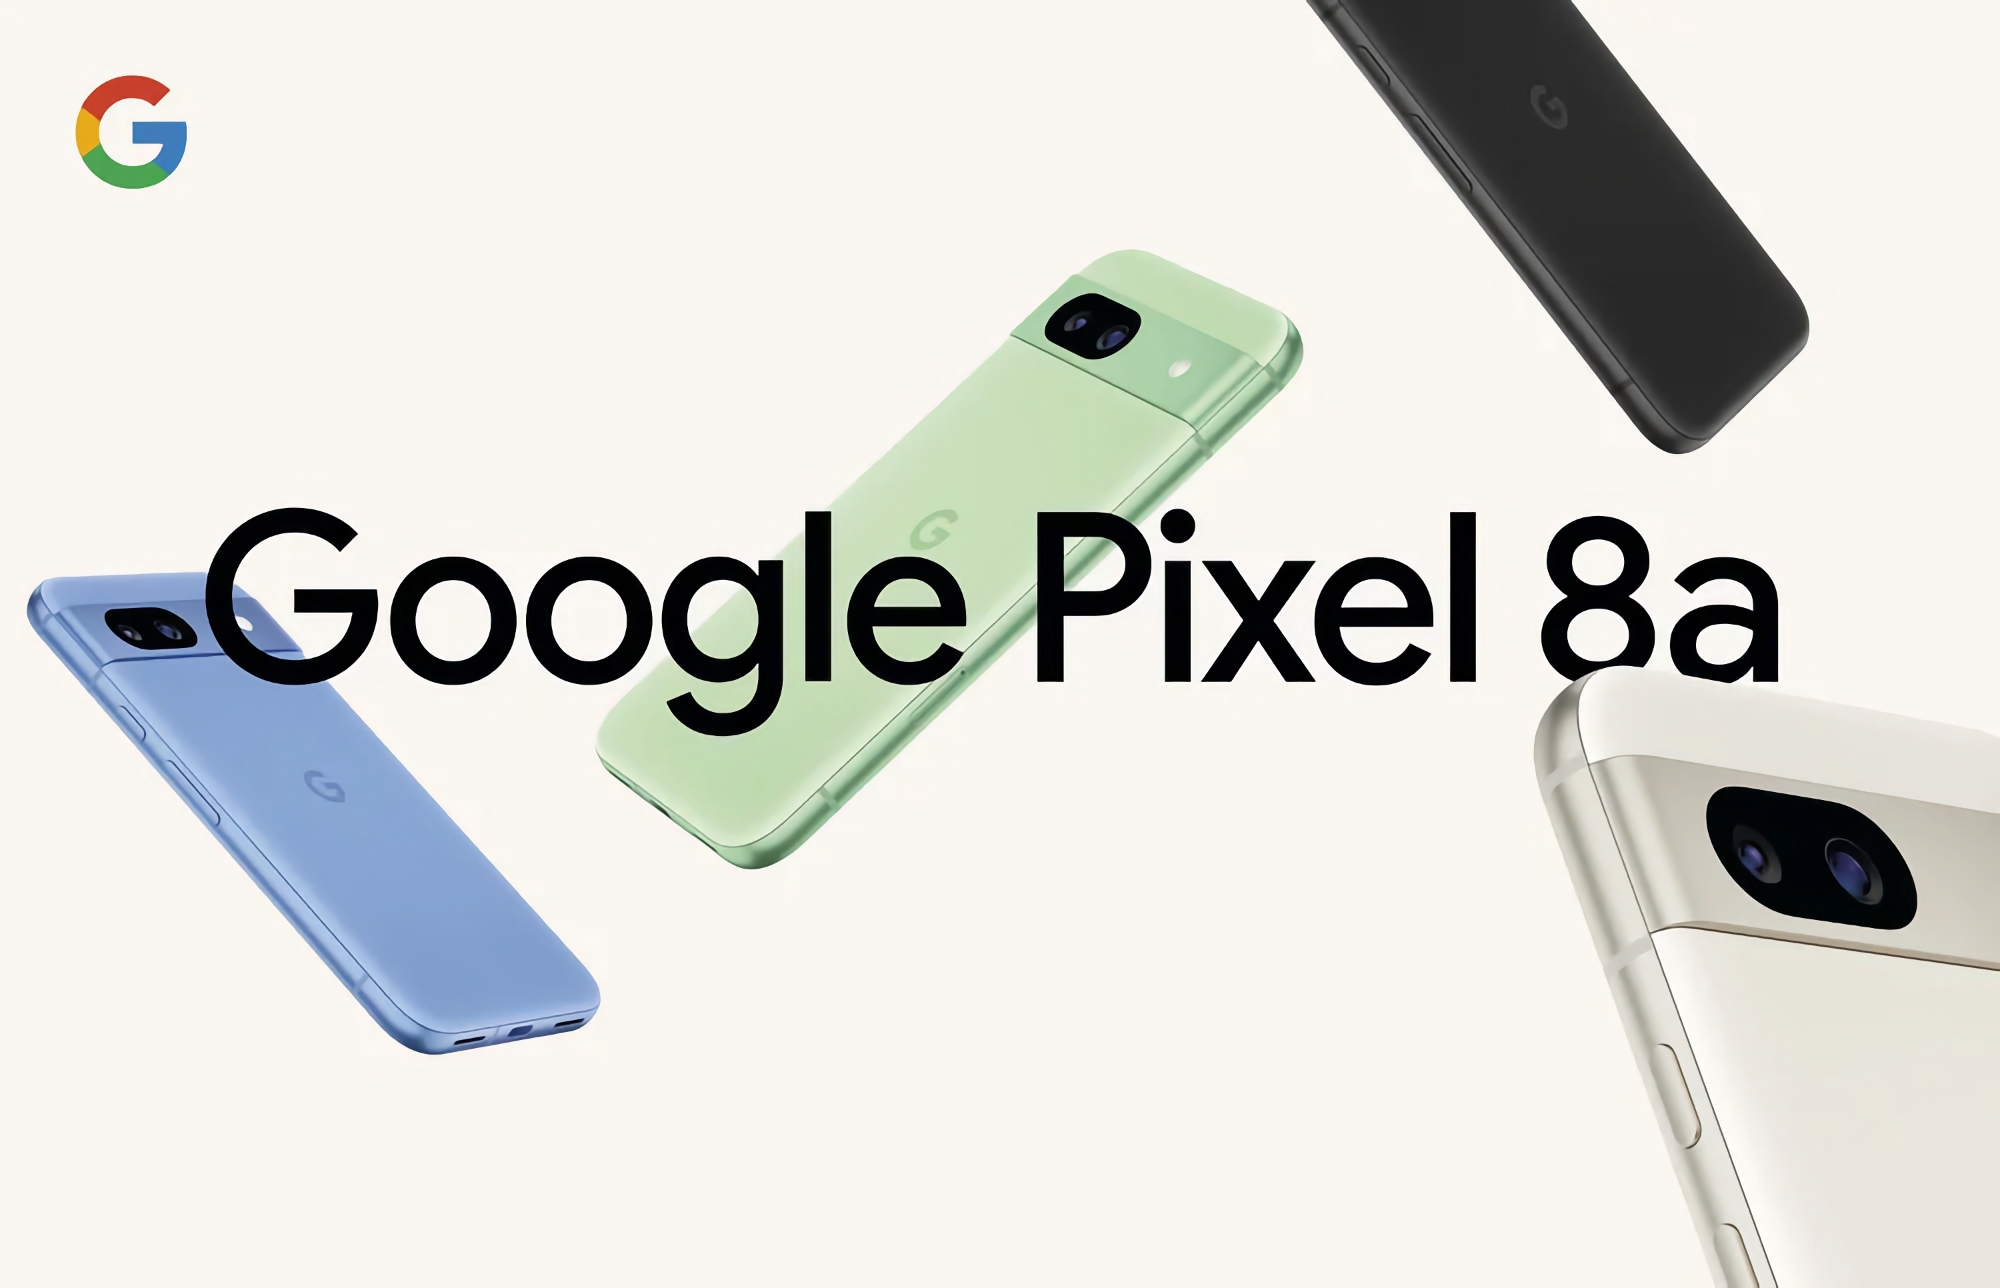 Le Google Pixel 8a avec écran AMOLED 120Hz, puce Tensor G3 et protection IP67 est déjà disponible sur Amazon.